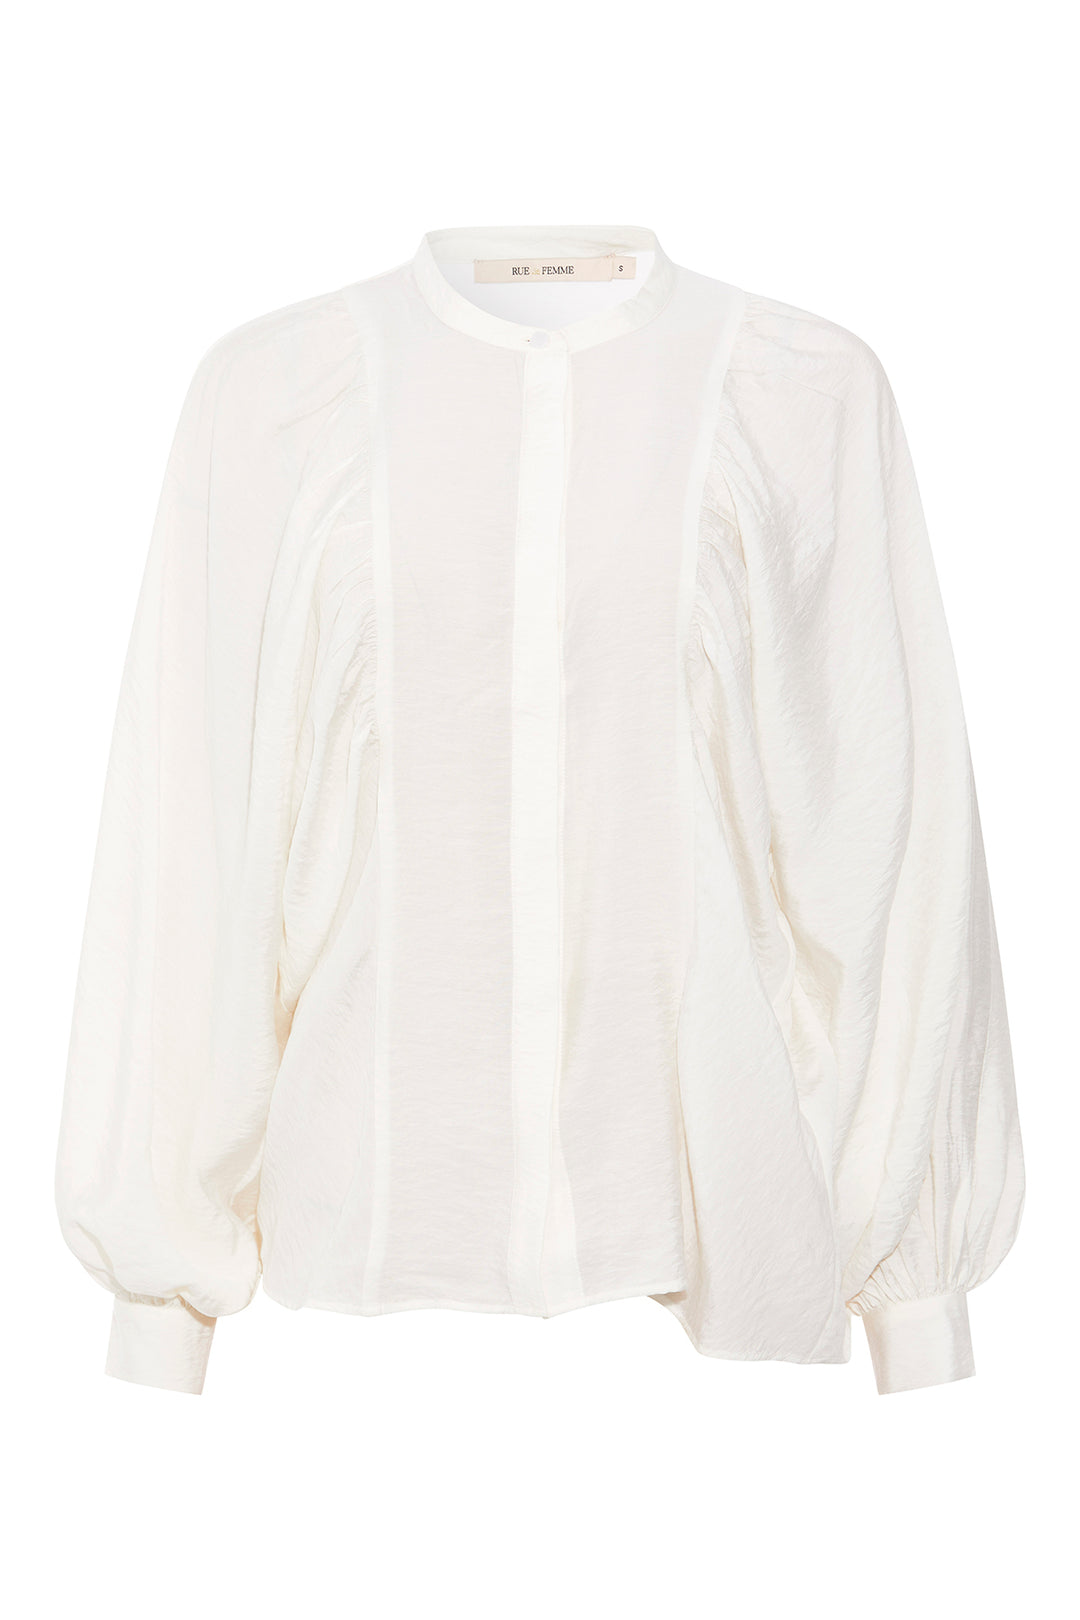 Rue de Femme Alondra shirt RdF SHIRTS 01 White